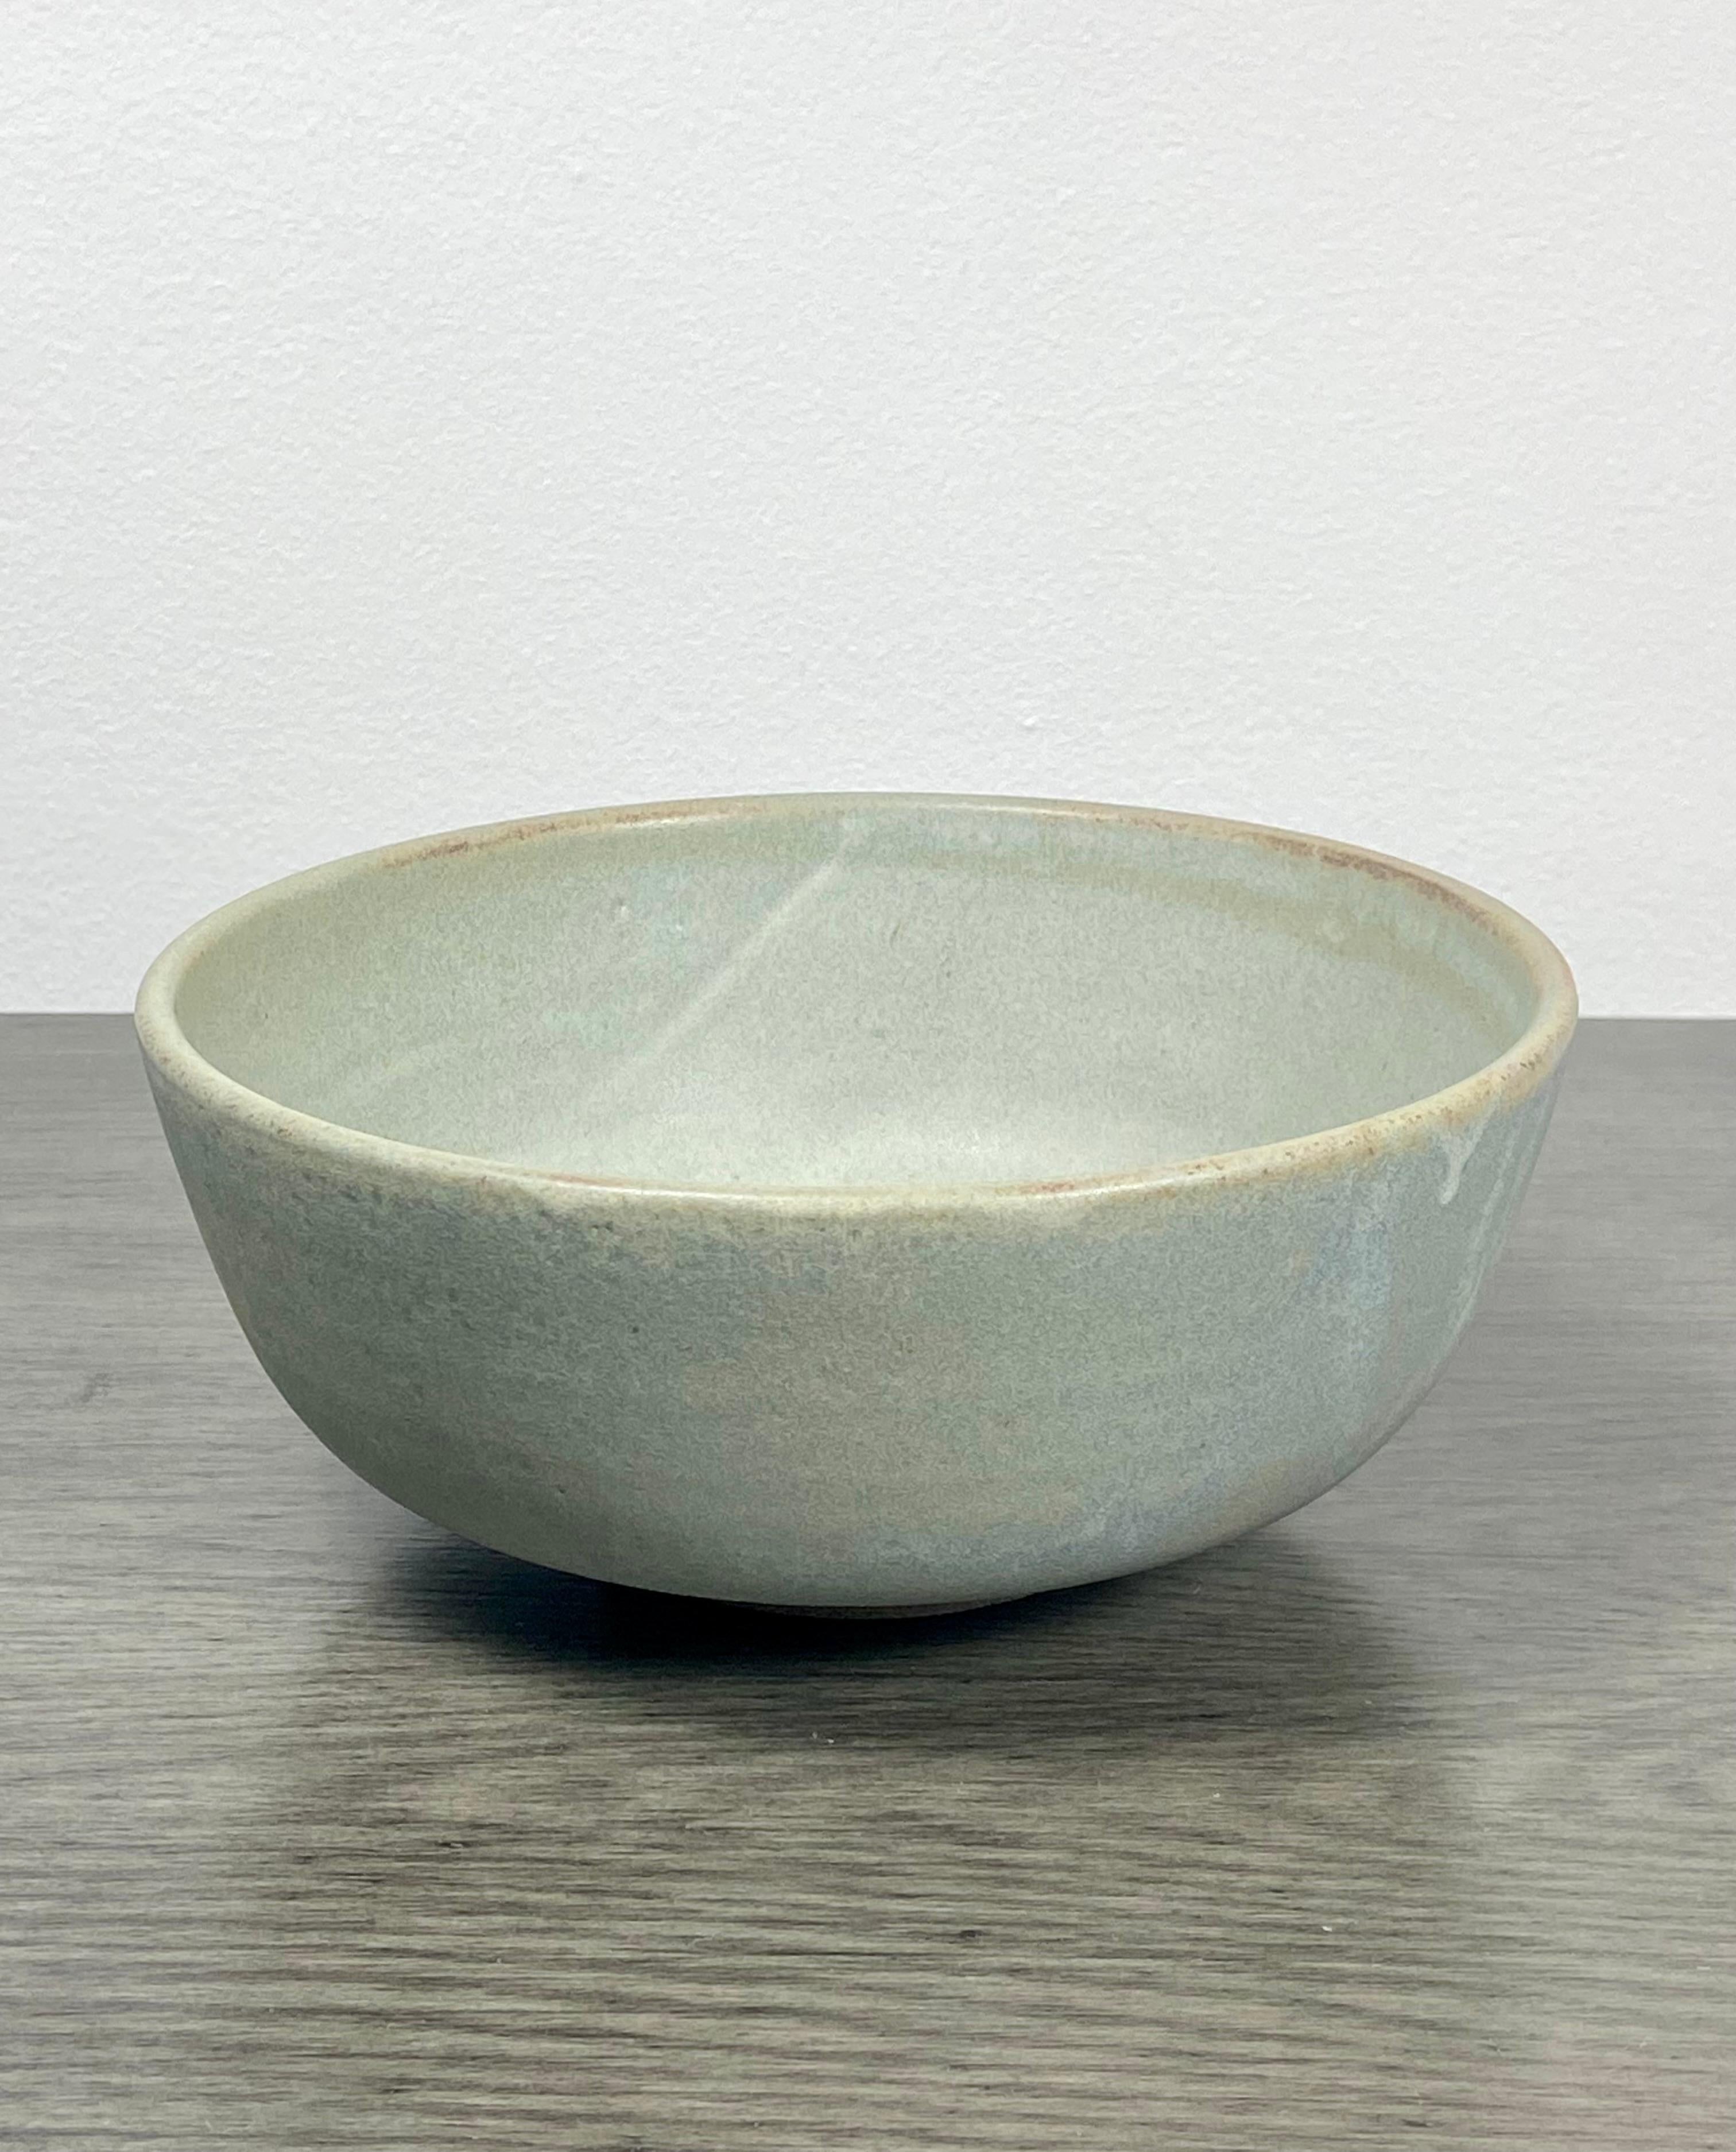 Contemporary Celadon Ceramic Bowl With Drip Glaze For Sale